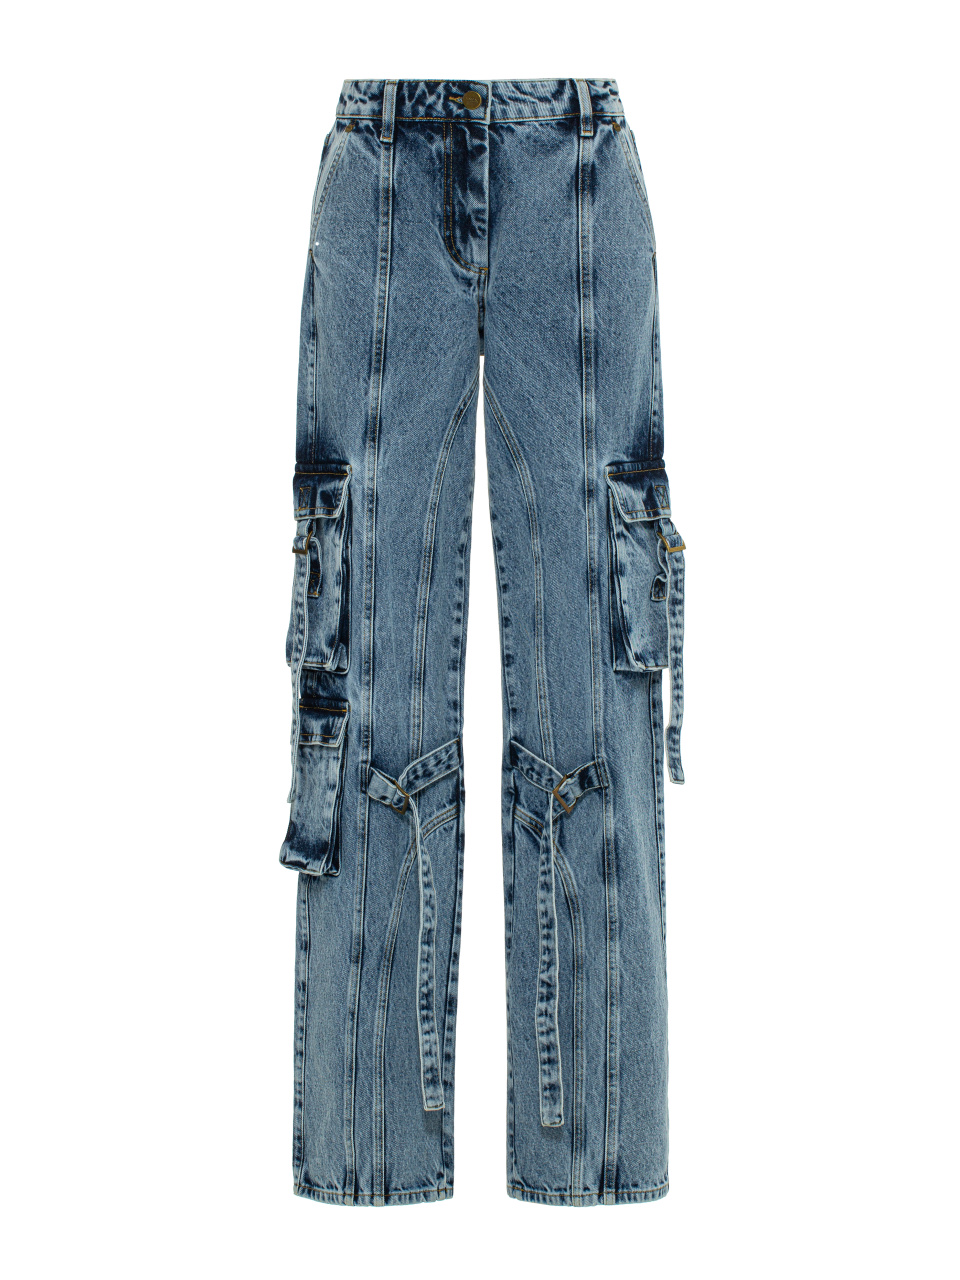 Синие джинсы-карго с ремнями, 1